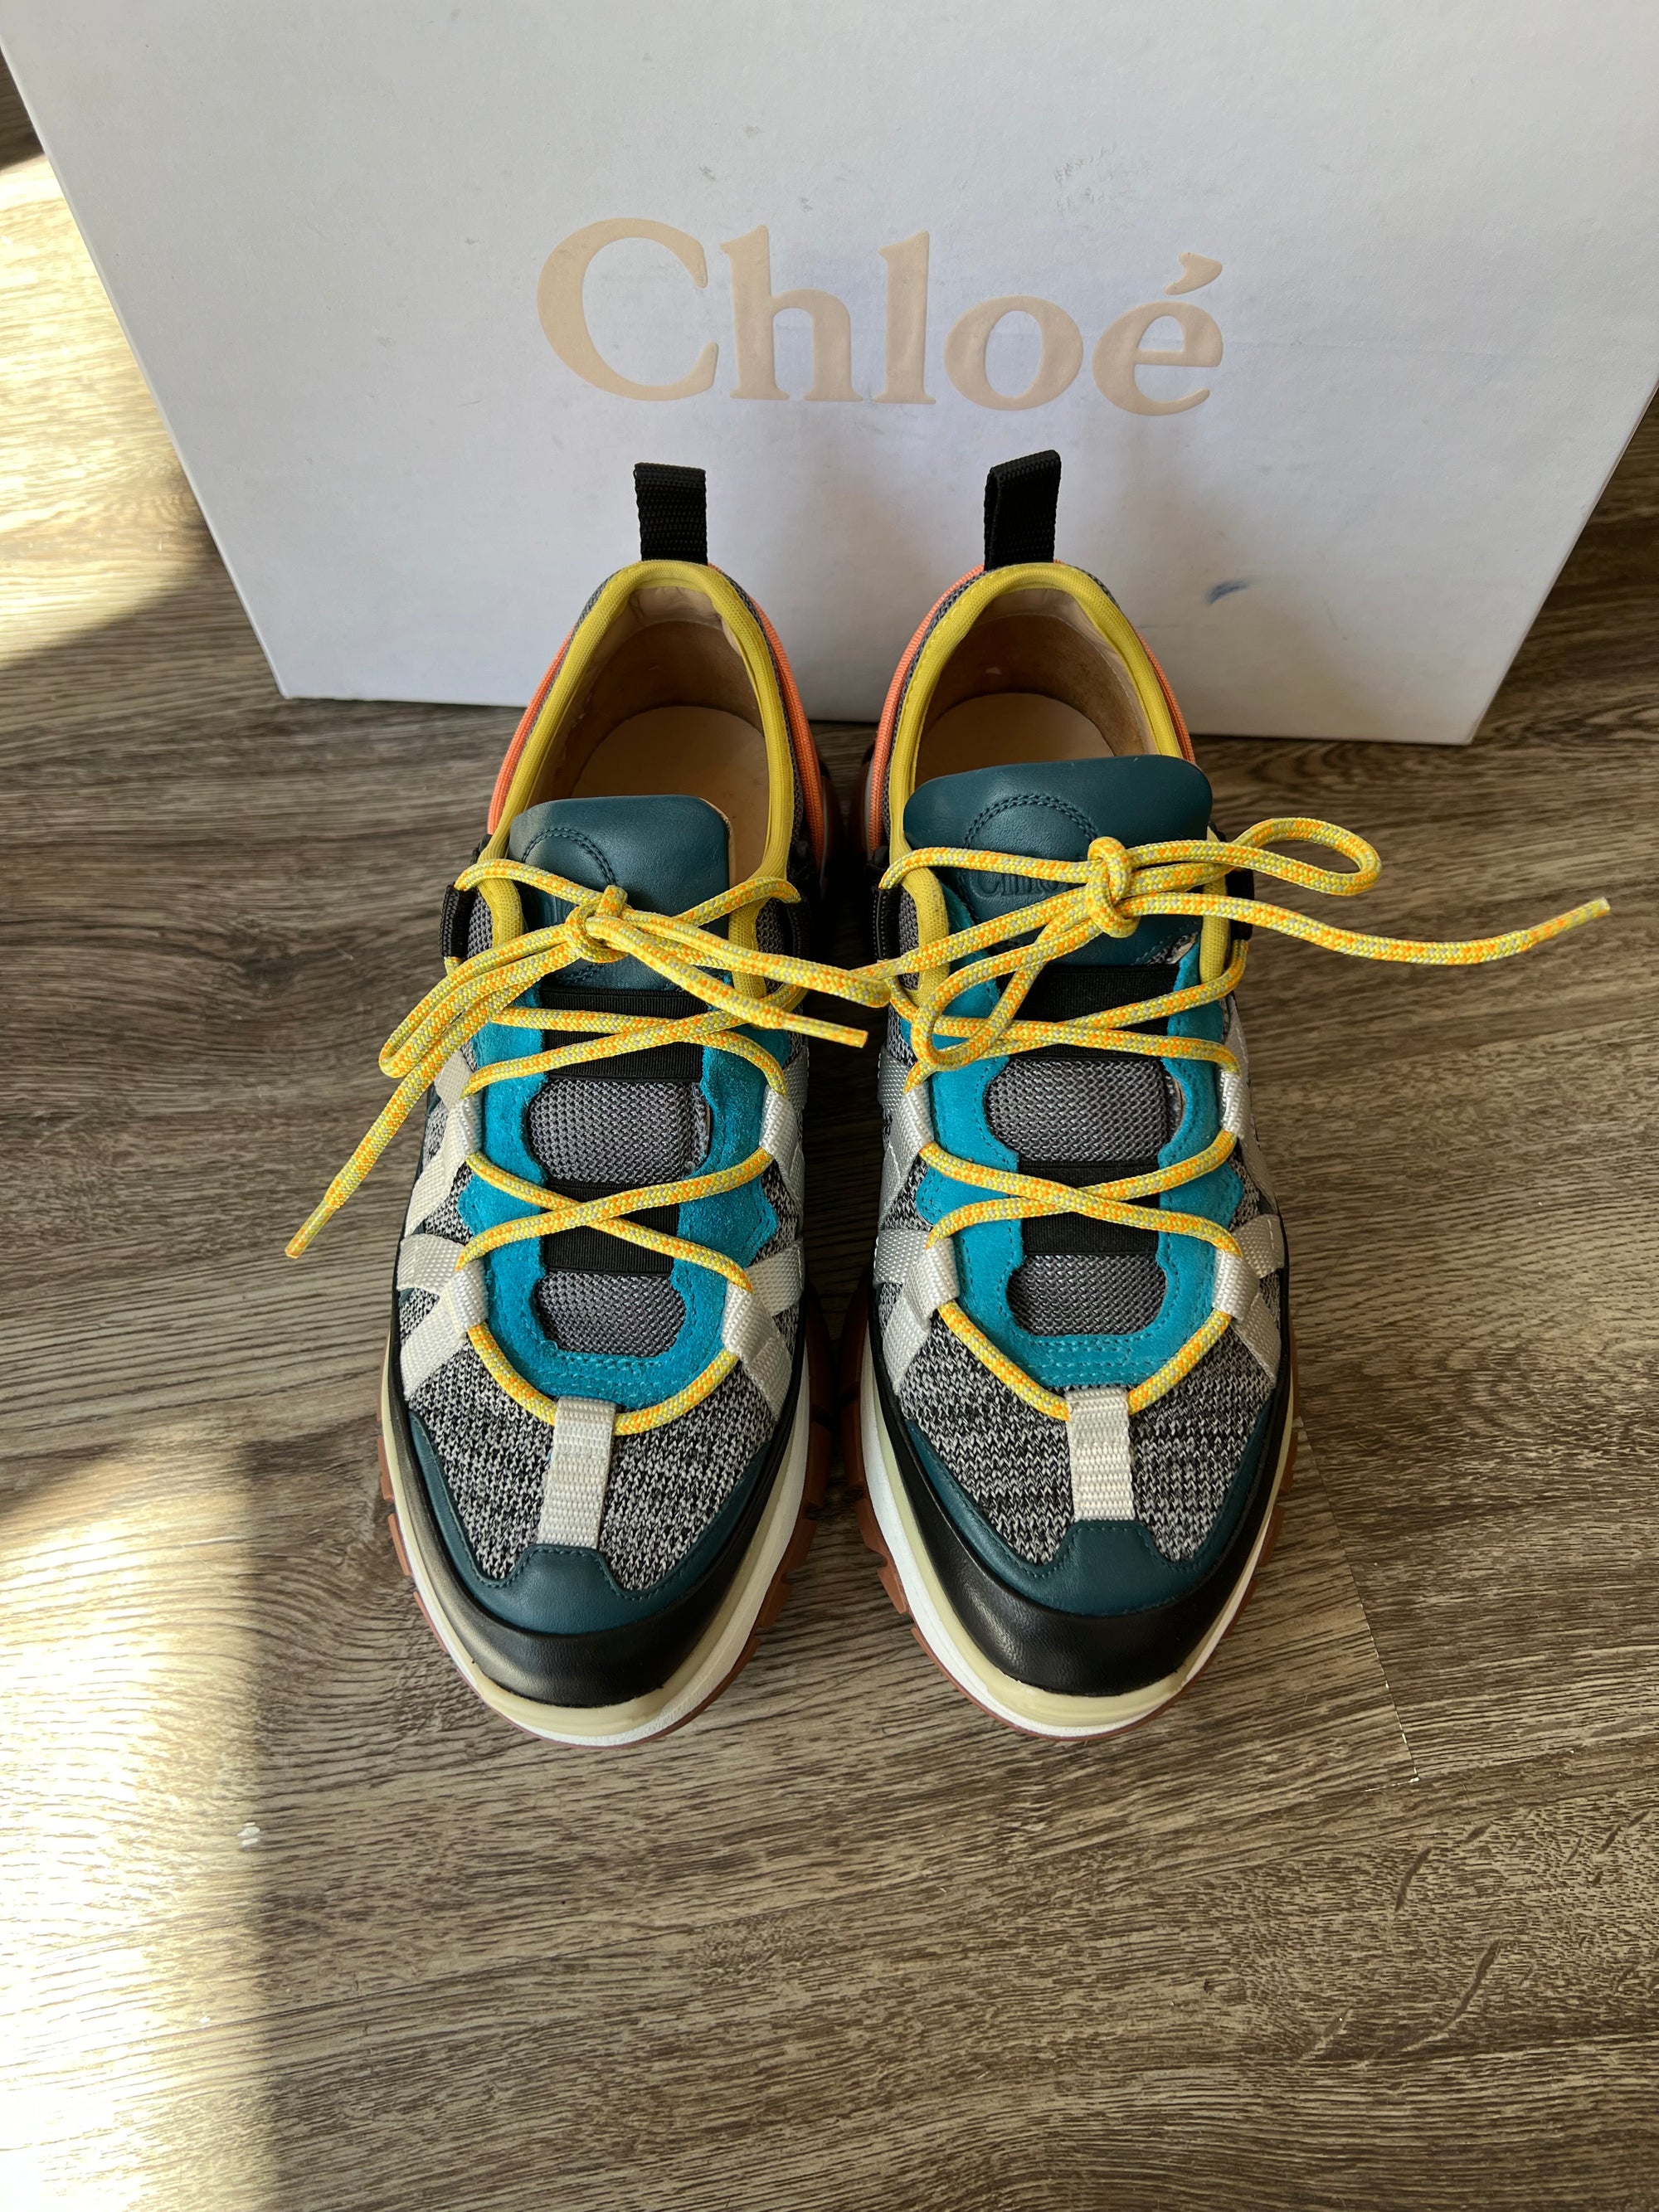 Chloe Sneakers, 39